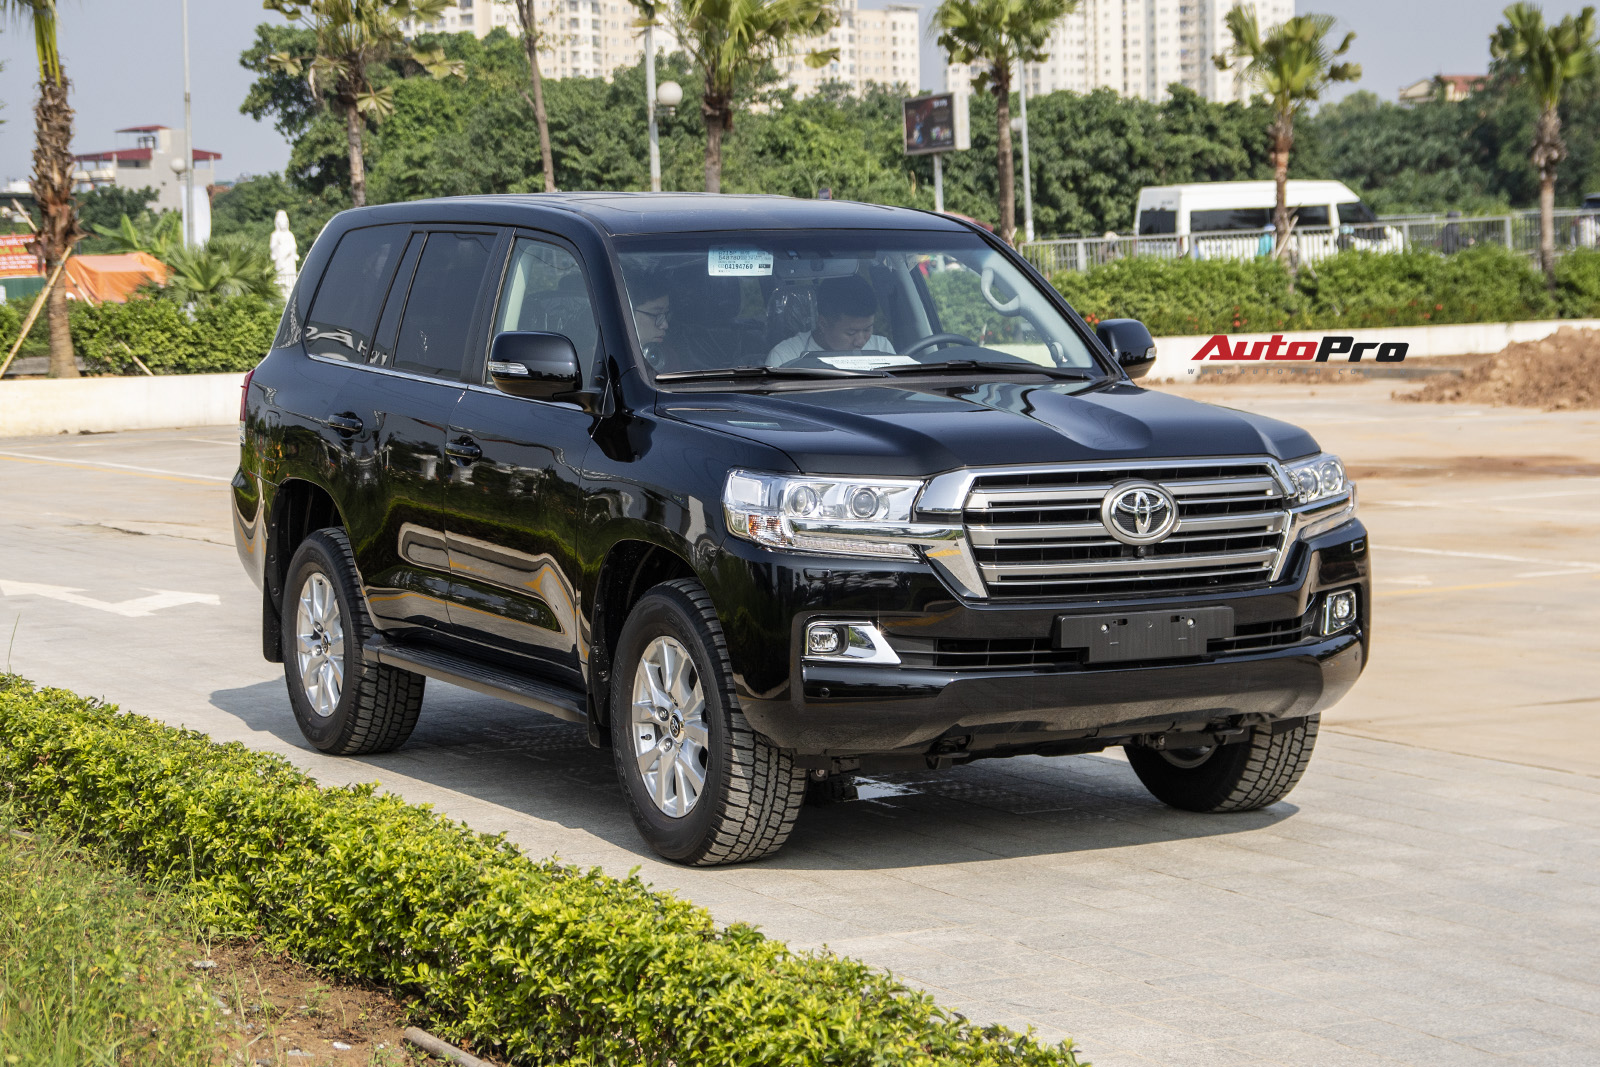 Đại lý Toyota nhận đặt cọc Land Cruiser 2021 tại VN: Xe về cuối năm, khách mua bản cũ phải chi thêm 200 triệu đồng - Ảnh 5.